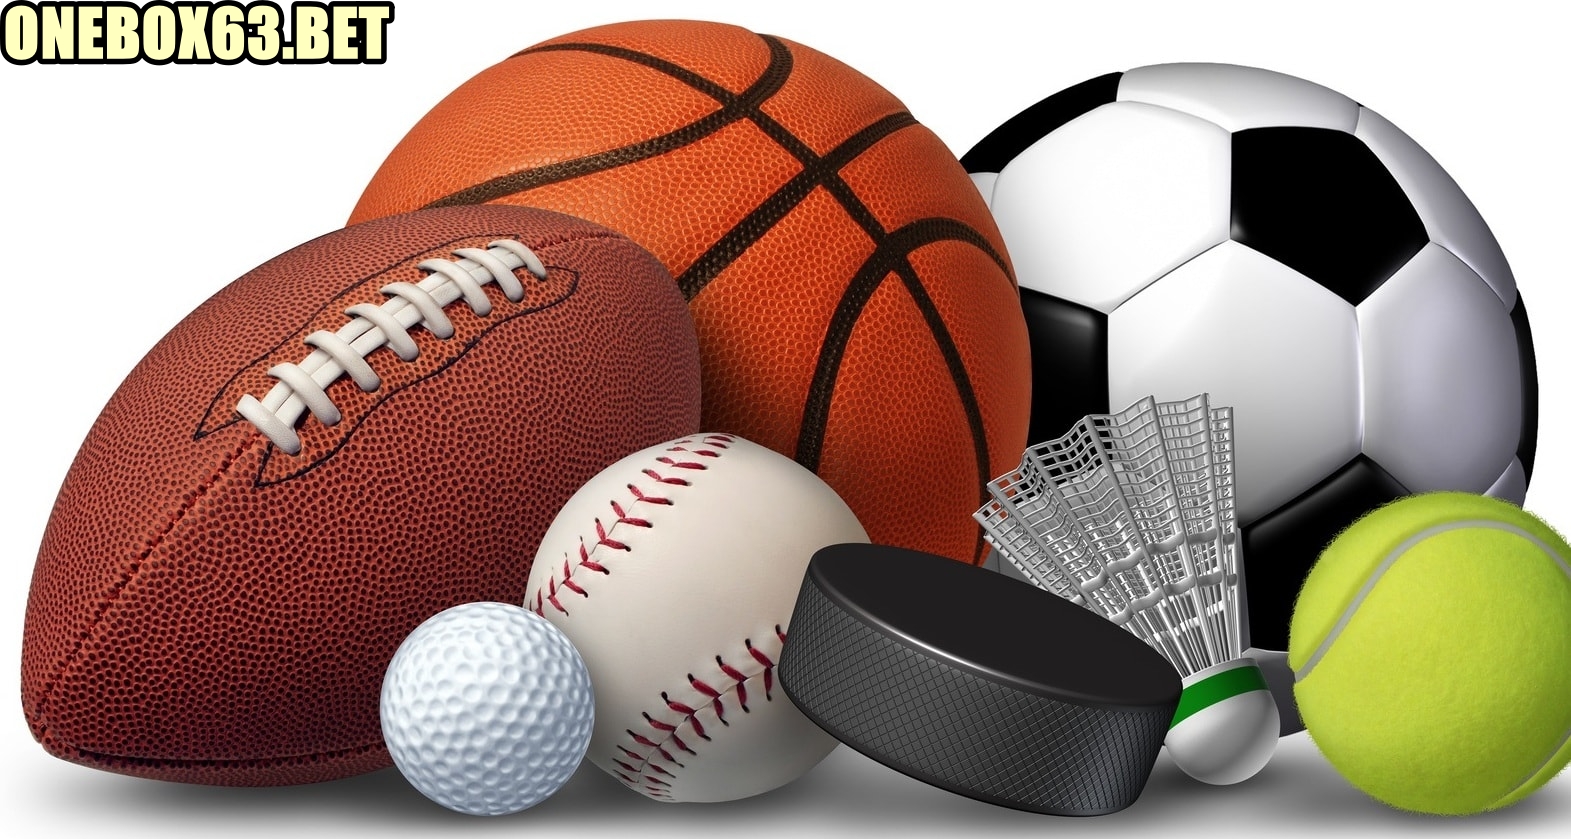 Chuyên mục “Thể thao” tại trang web onebox63.info là gì?